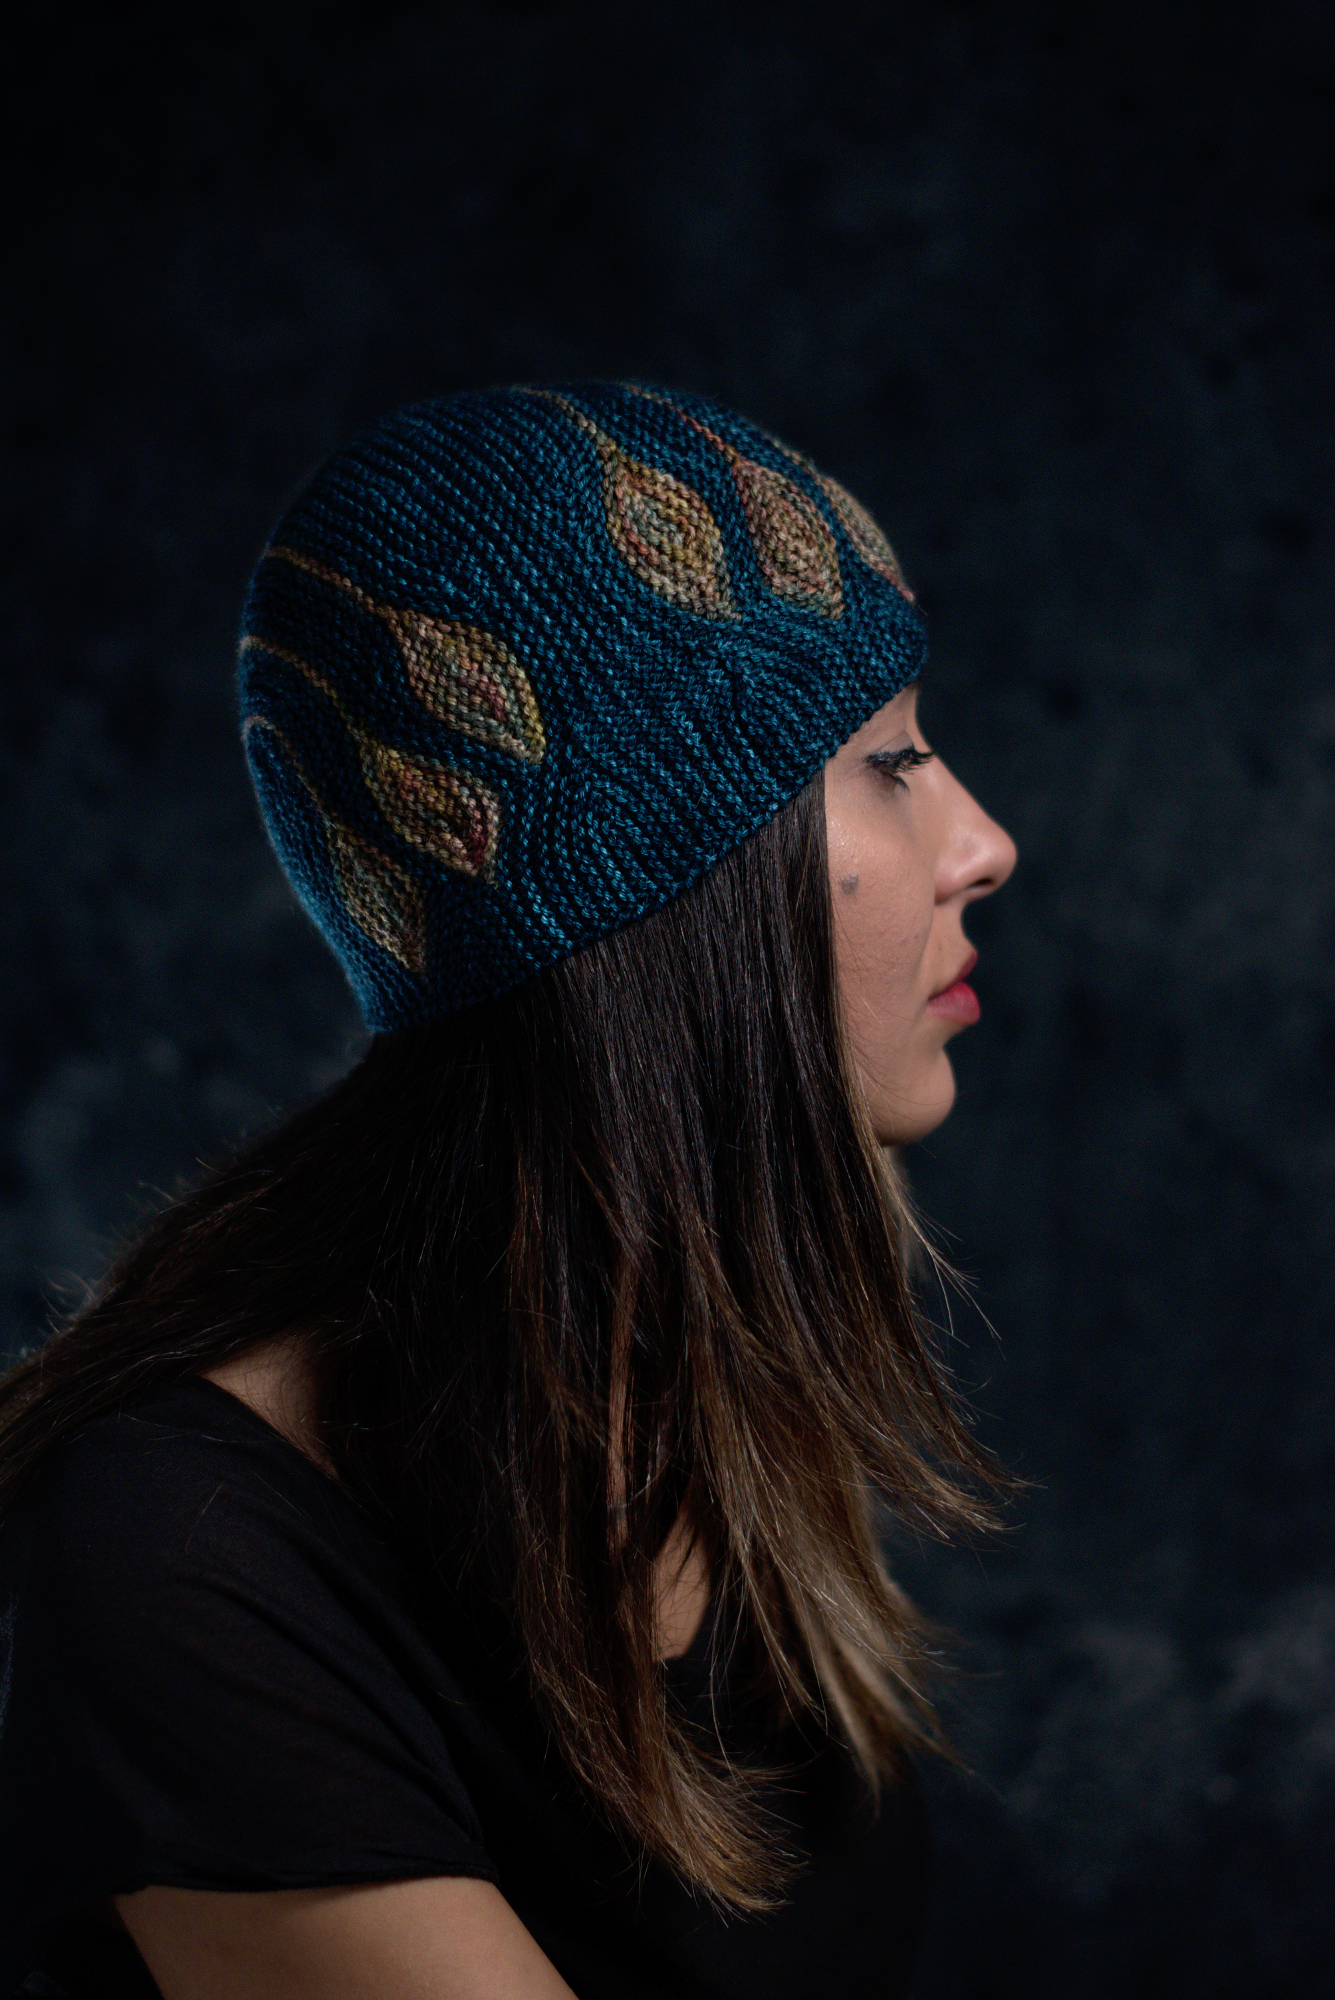 Chiral sideways knit short row colourwork hat knitting pattern